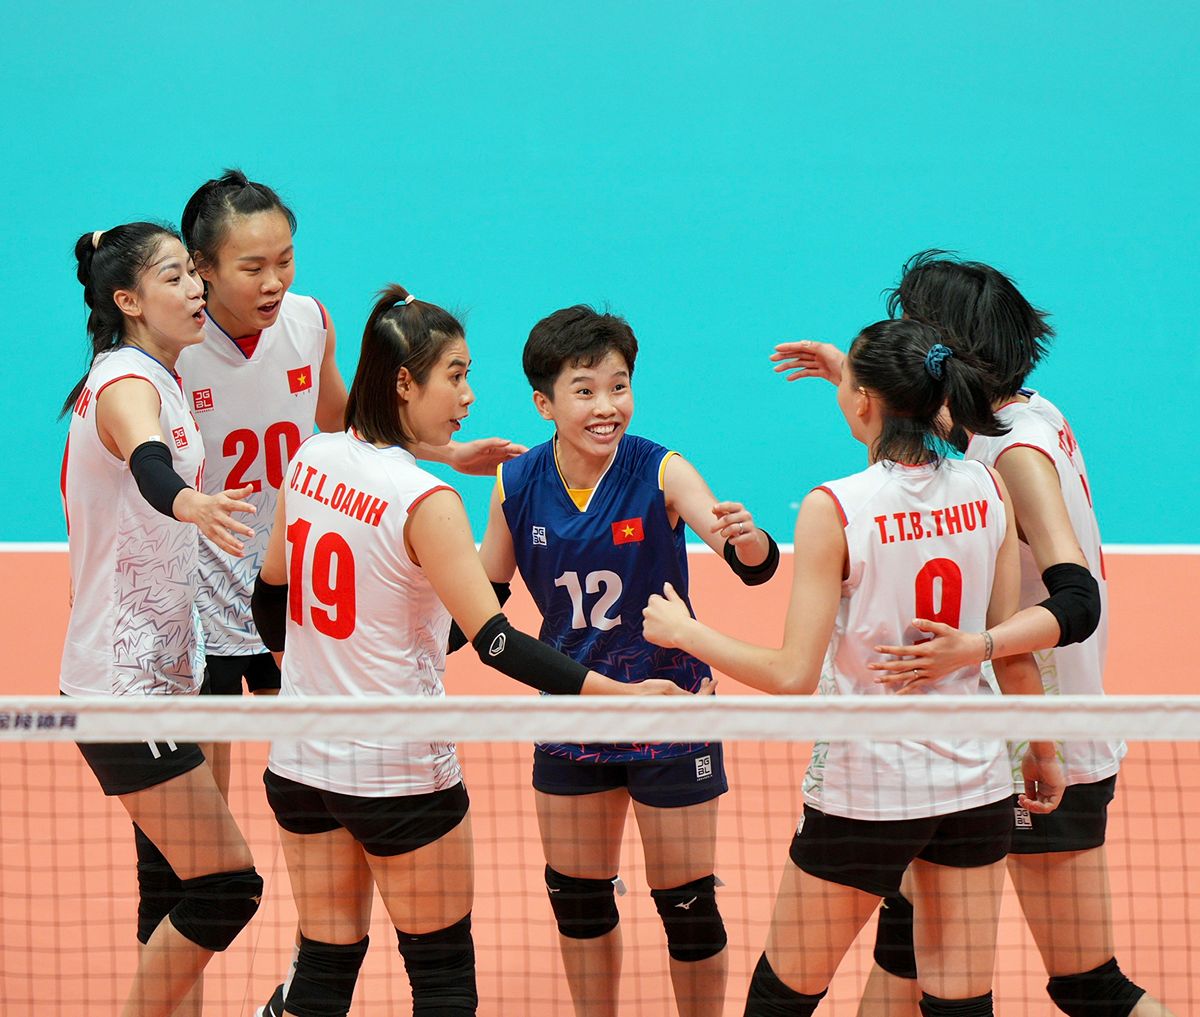 Đội tuyển bóng chuyền nữ Việt Nam: Thành tích ấn tượng tại ASIAD 19 - -1517368764